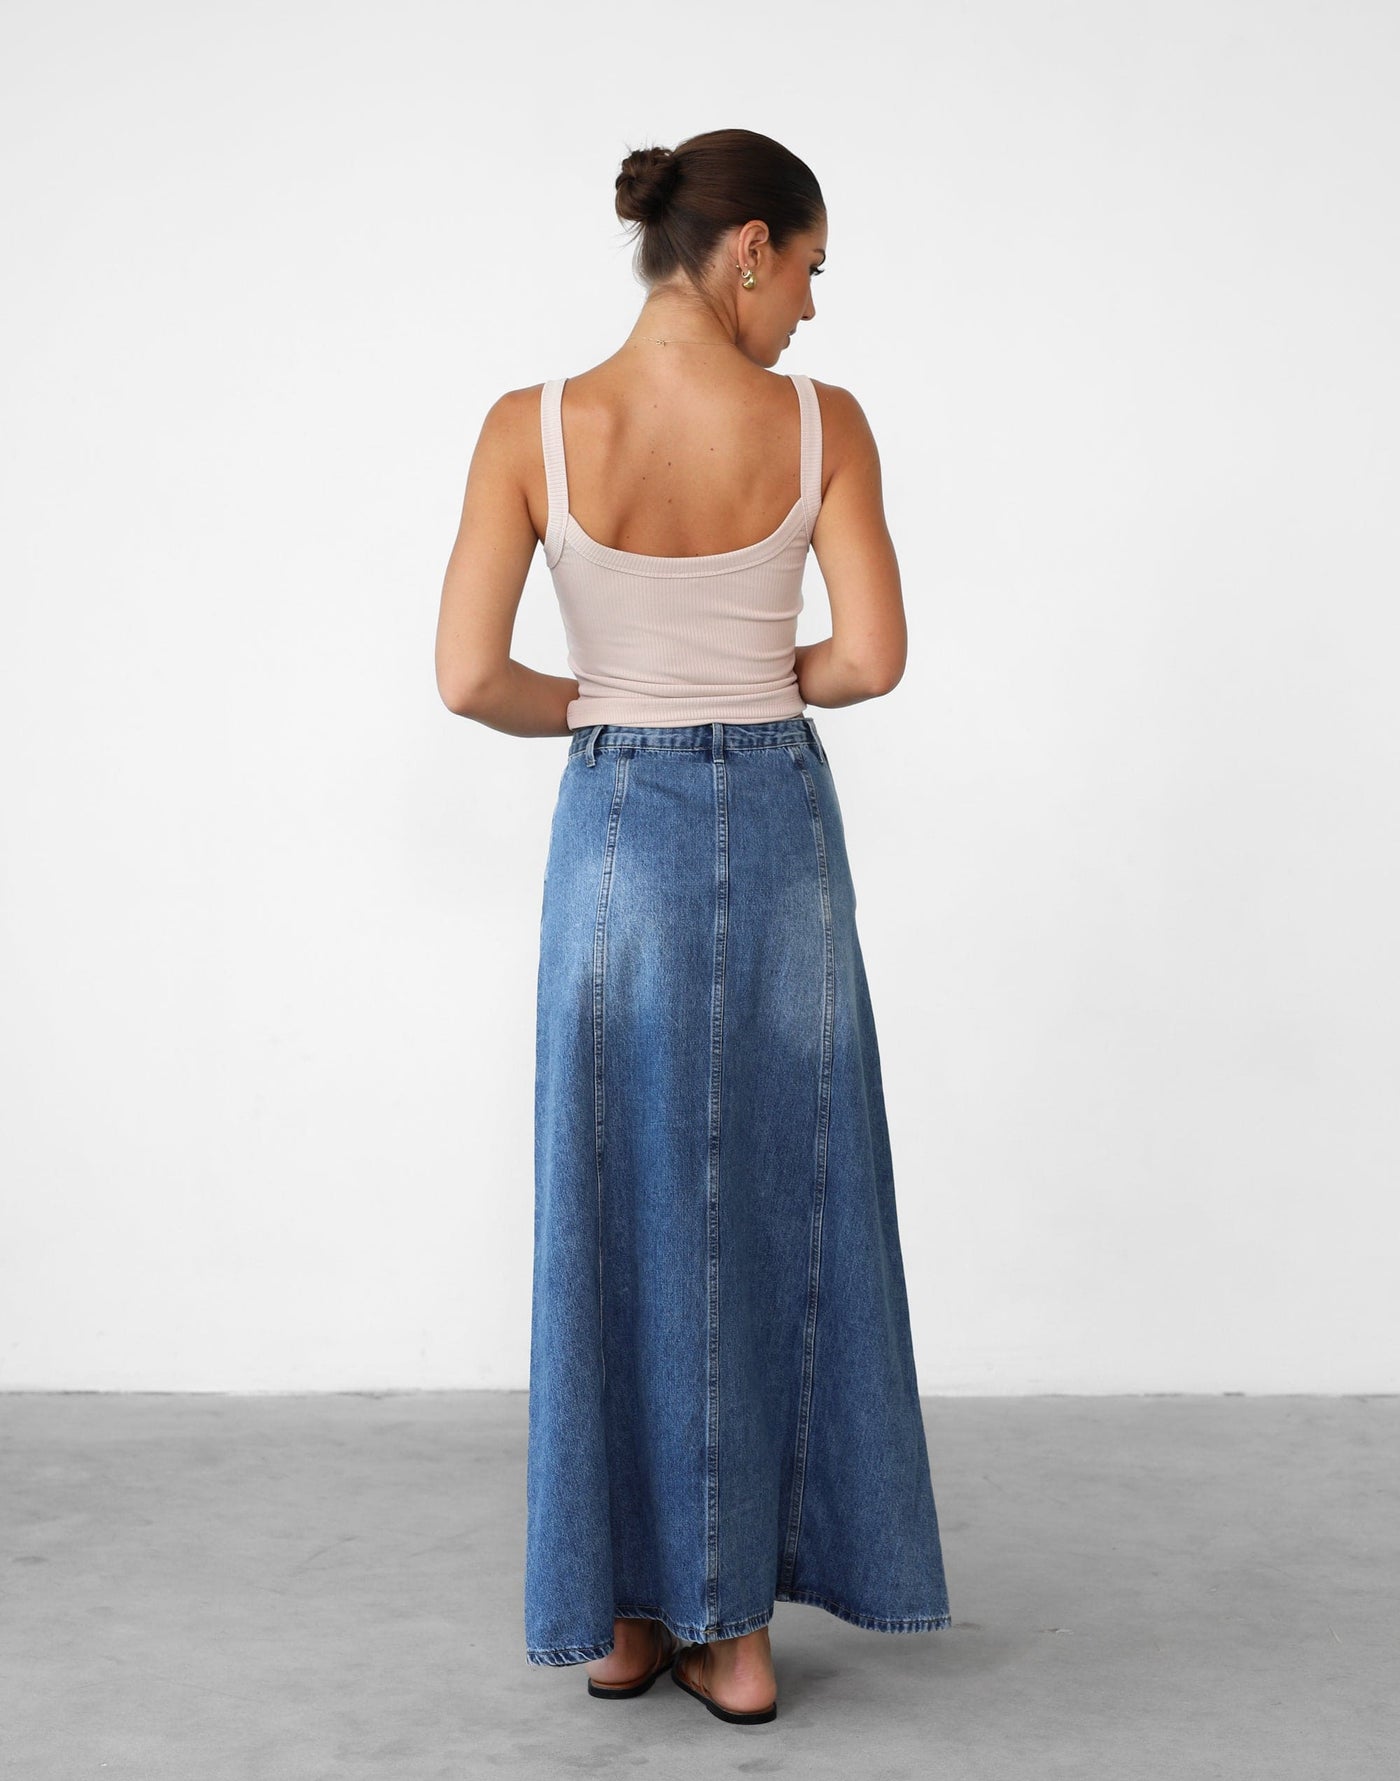 Akara Denim Maxi Skirt (Blue Denim) - High Waisted A-line Maxi Skirt - Women's Skirt - Charcoal Clothing